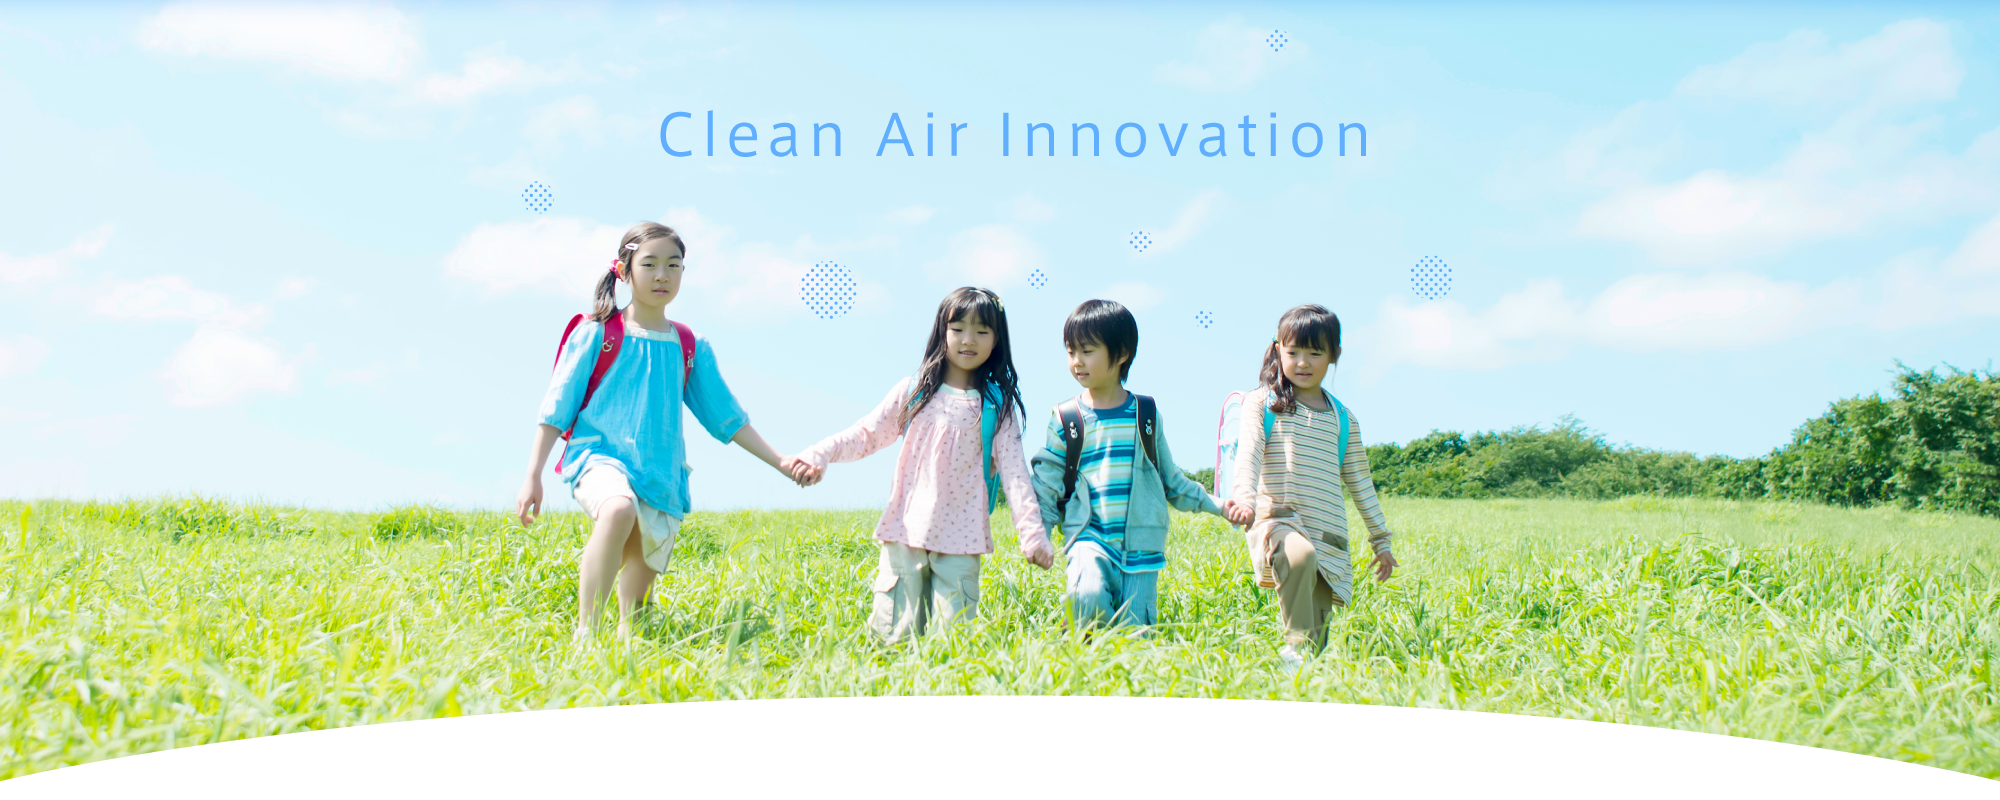 Clean Air Innovation